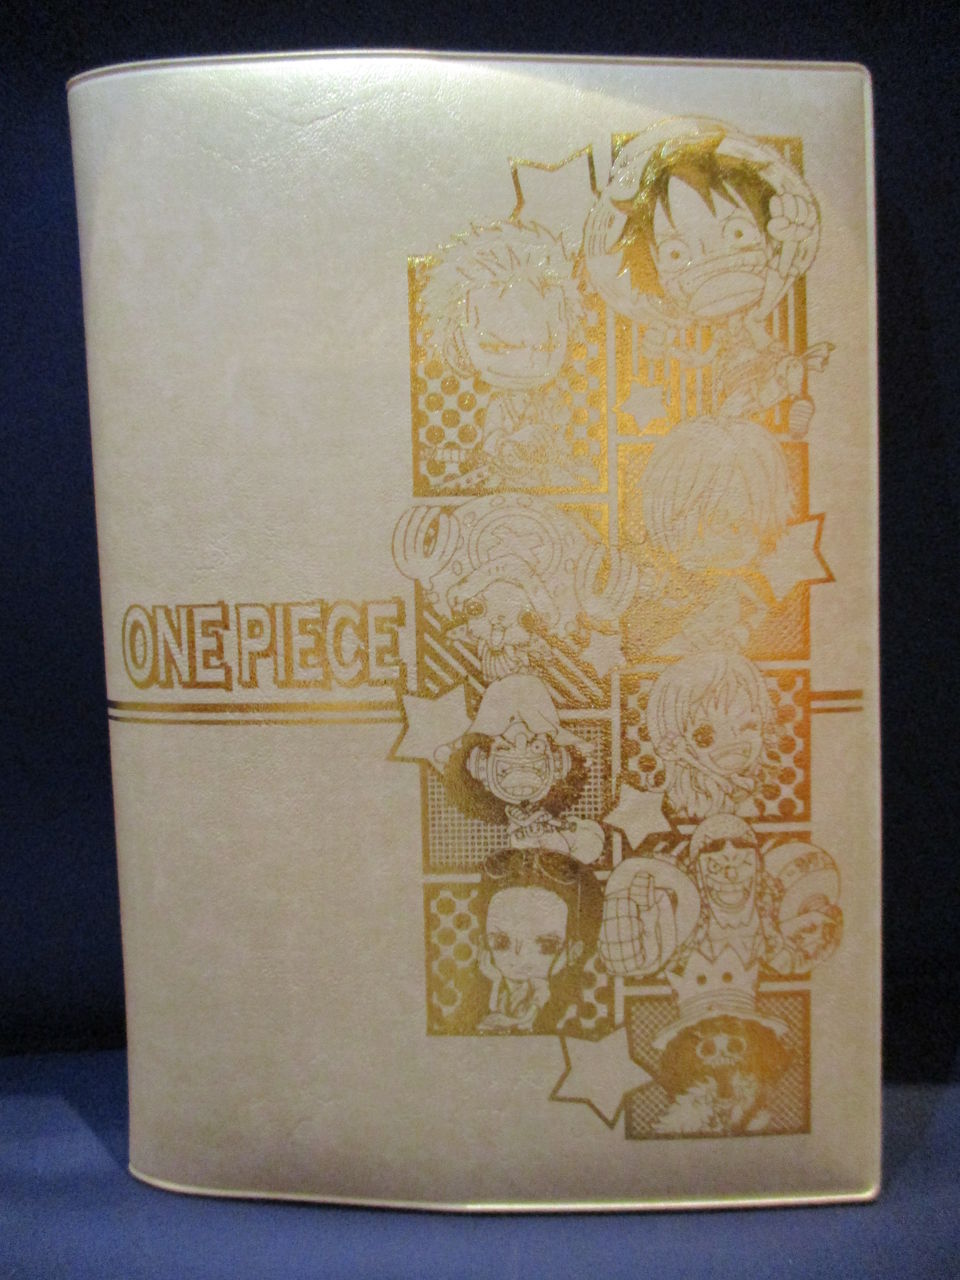 大阪店 18年度版スケジュール帳とカレンダーのご案内 One Piece 麦わらストア 航海日誌